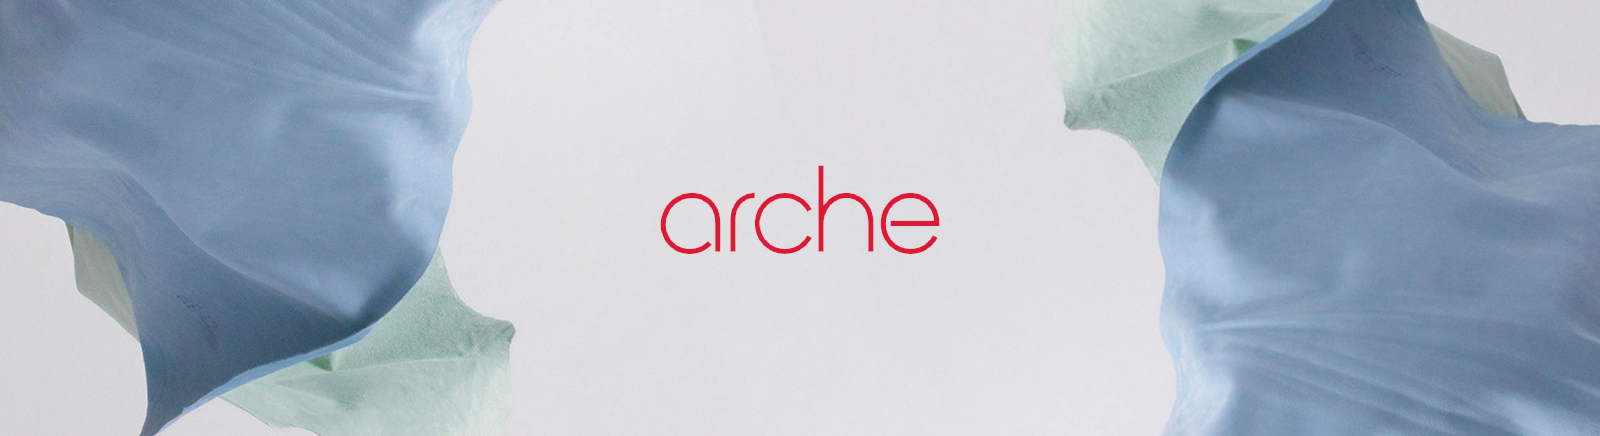 Arche Markenschuhe online bestellen im Prange Schuhe Shop